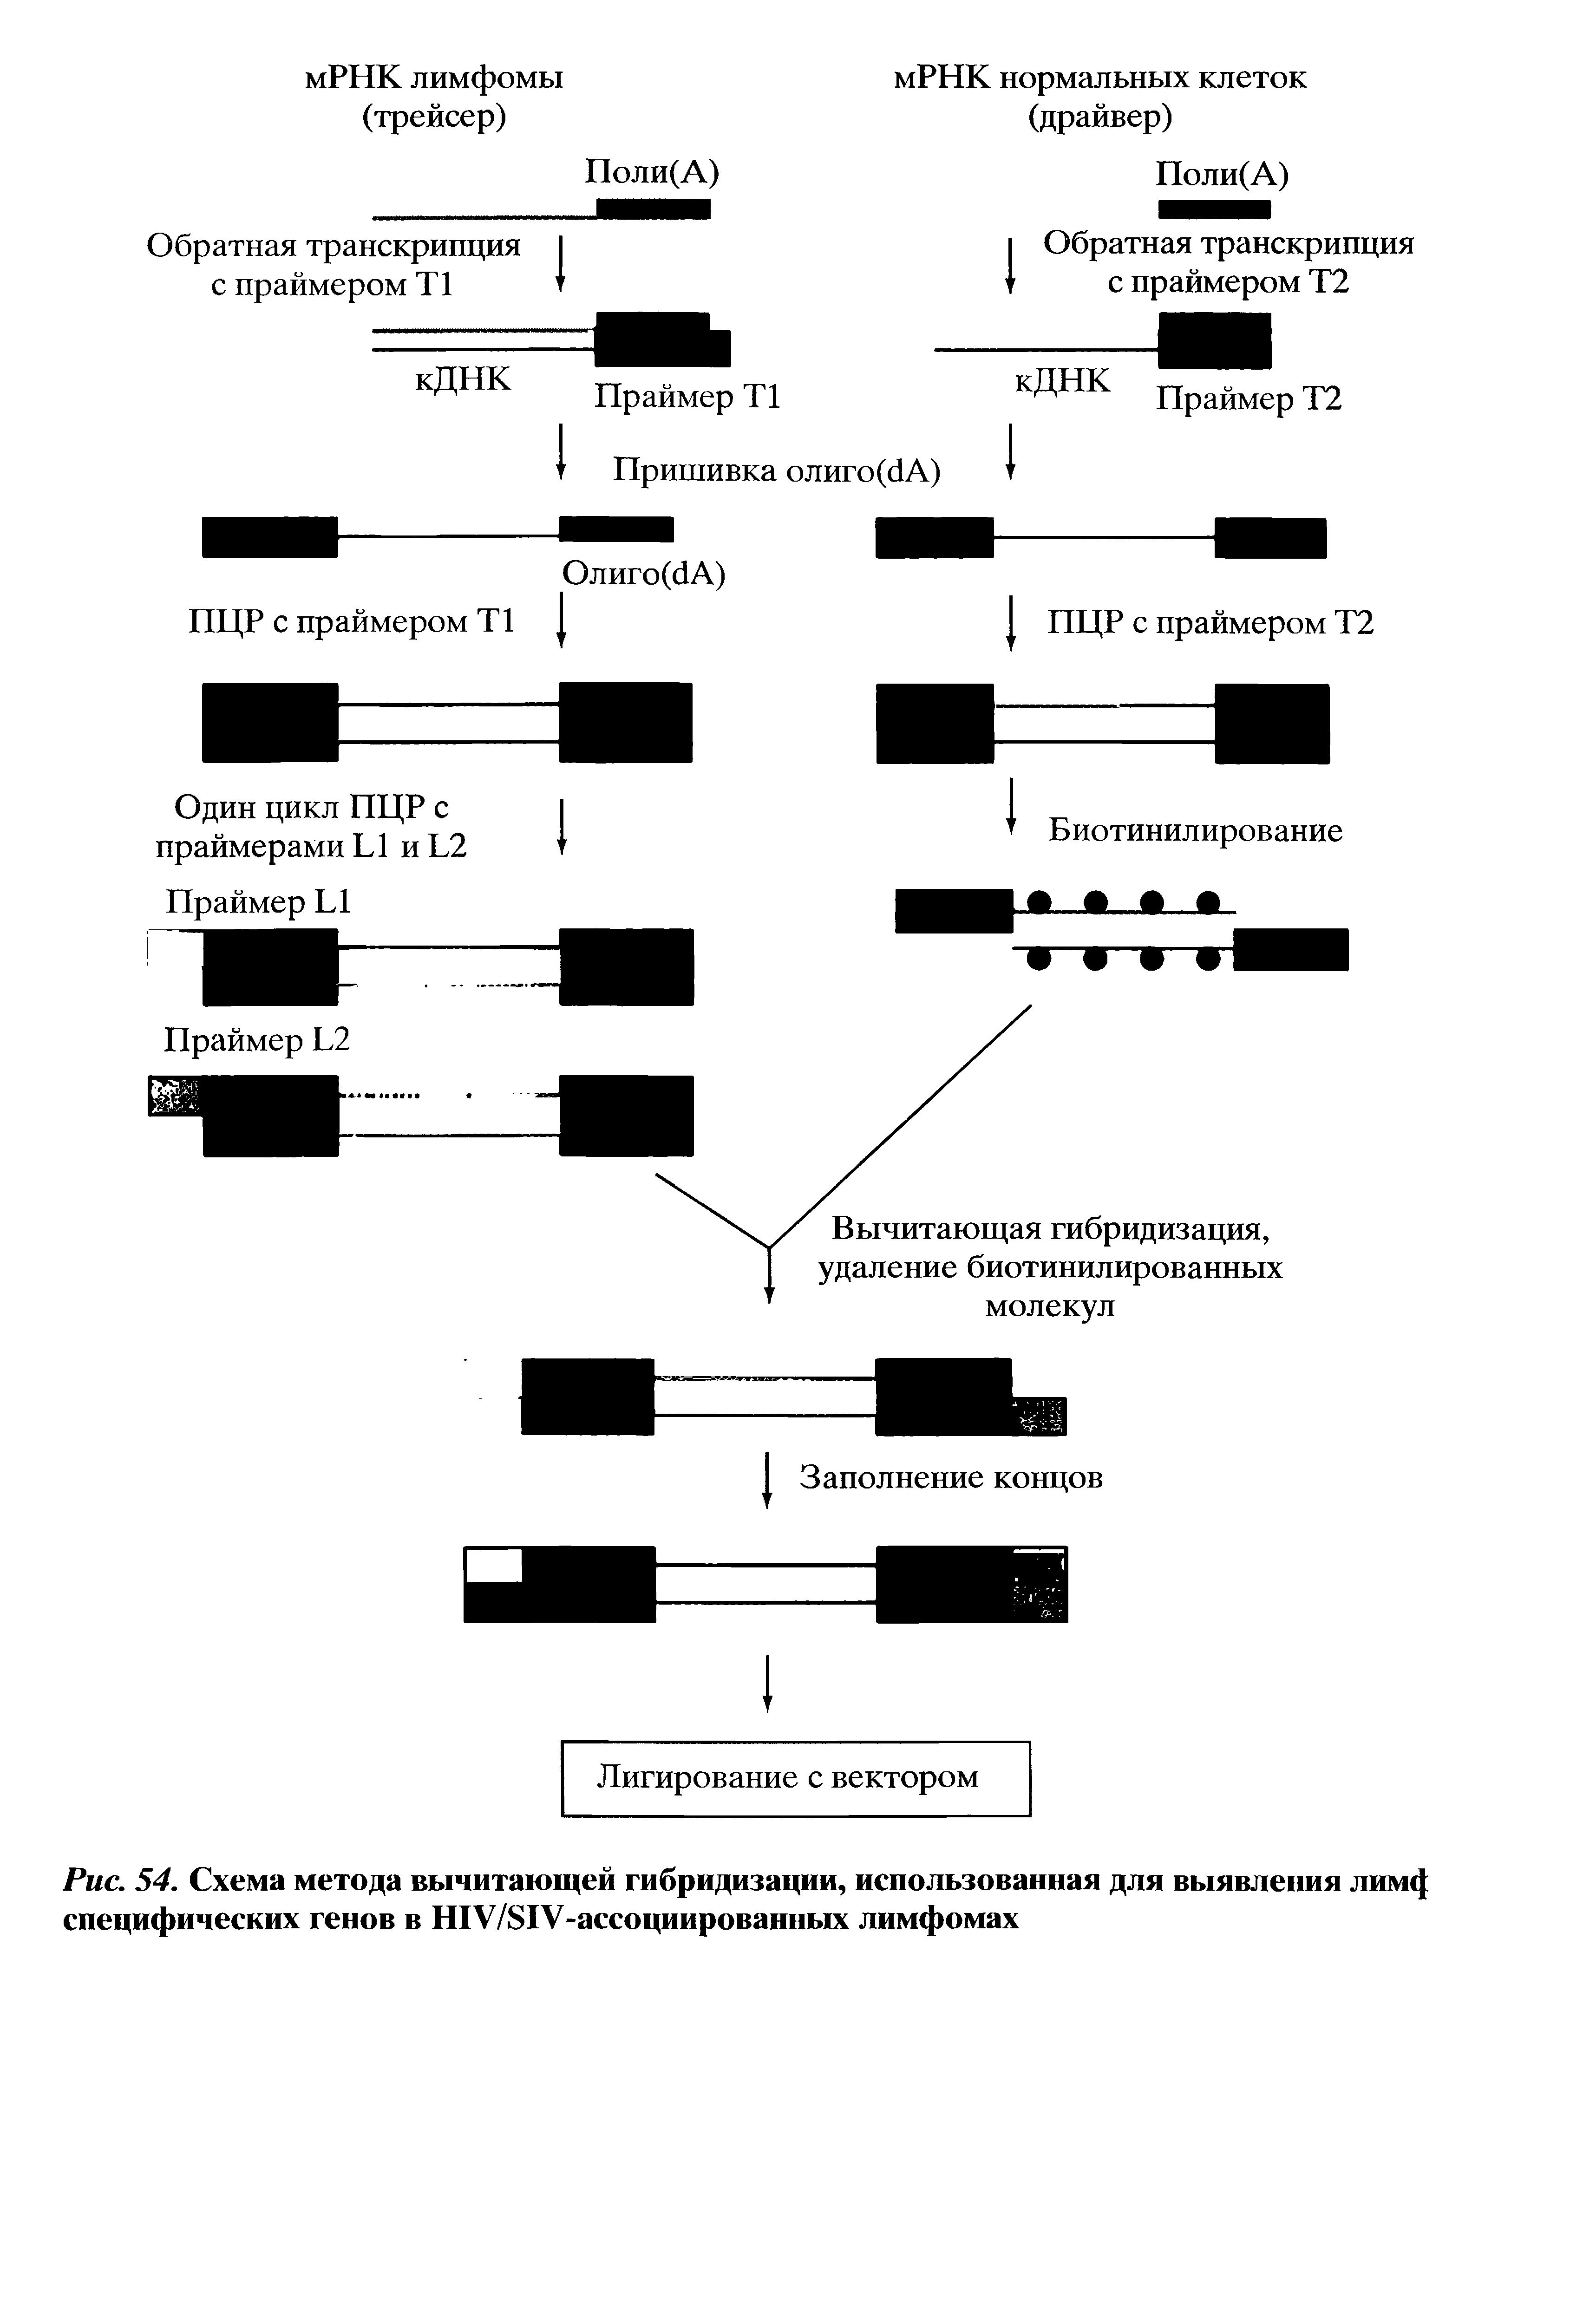 Рис. 54. Схема метода вычитающей гибридизации, использованная для выявления лим специфических генов в Н1У/81У-ассоциированных лимфомах...